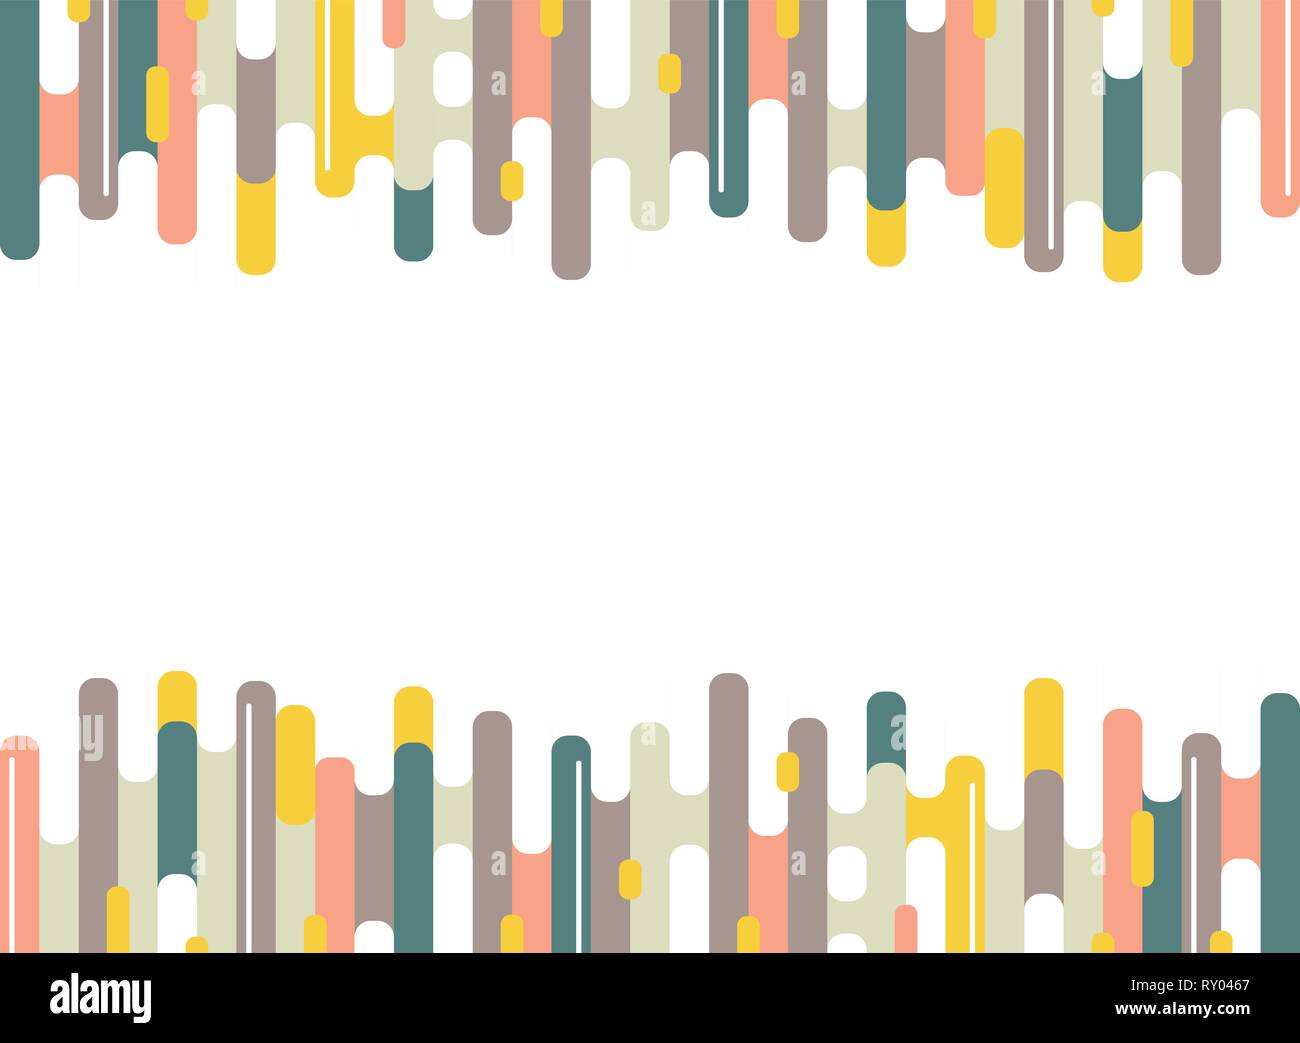 Abstract colorful bande bord de motif de lignes de fond minimal. La conception moderne de l'art, annonce, affiche, livre, web, print. illustration vector eps10 Illustration de Vecteur